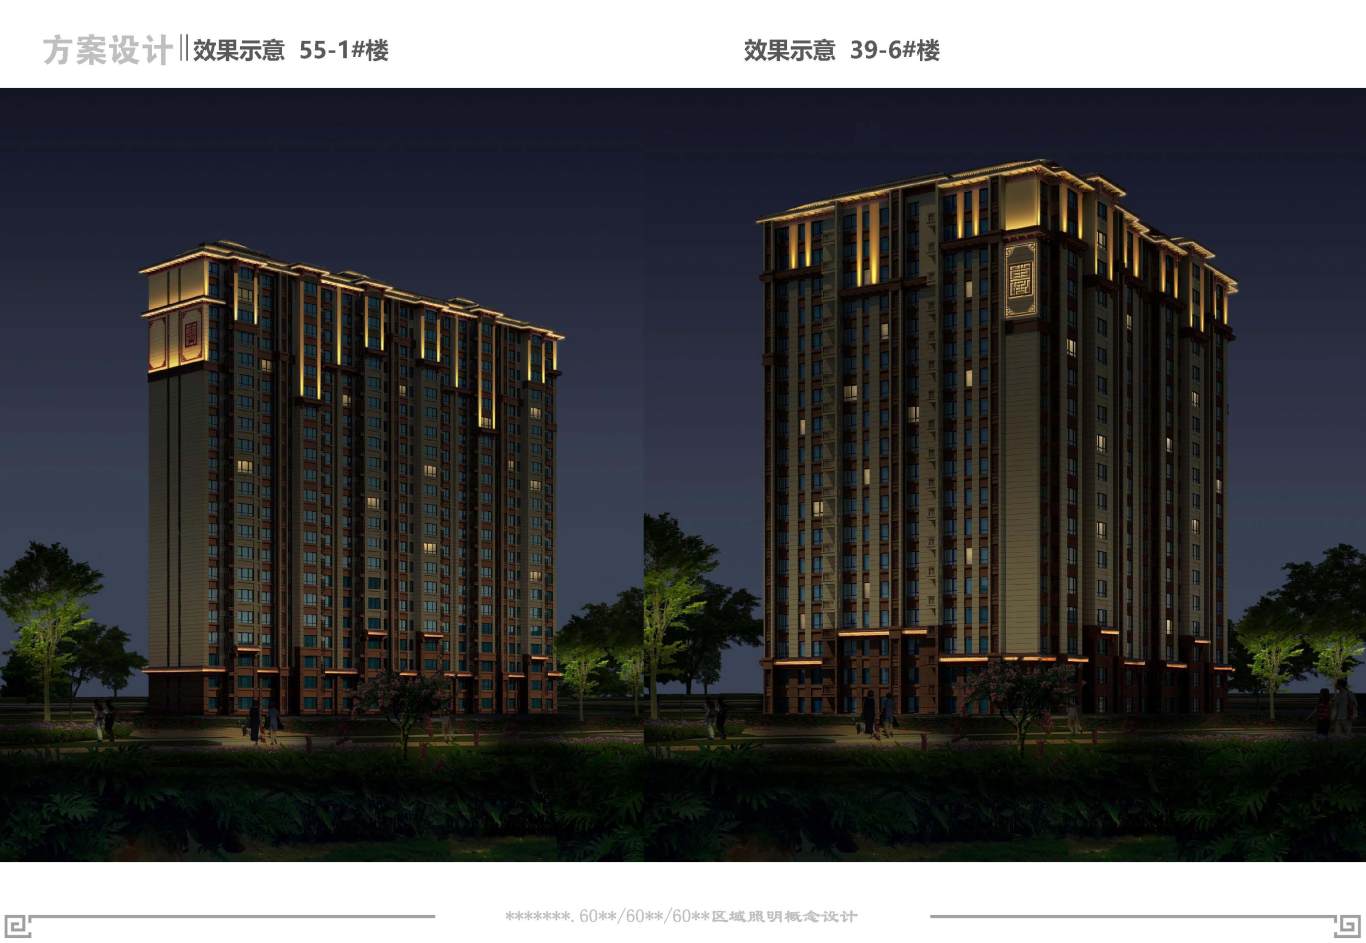 中式高層住宅樓夜景照明設計圖19